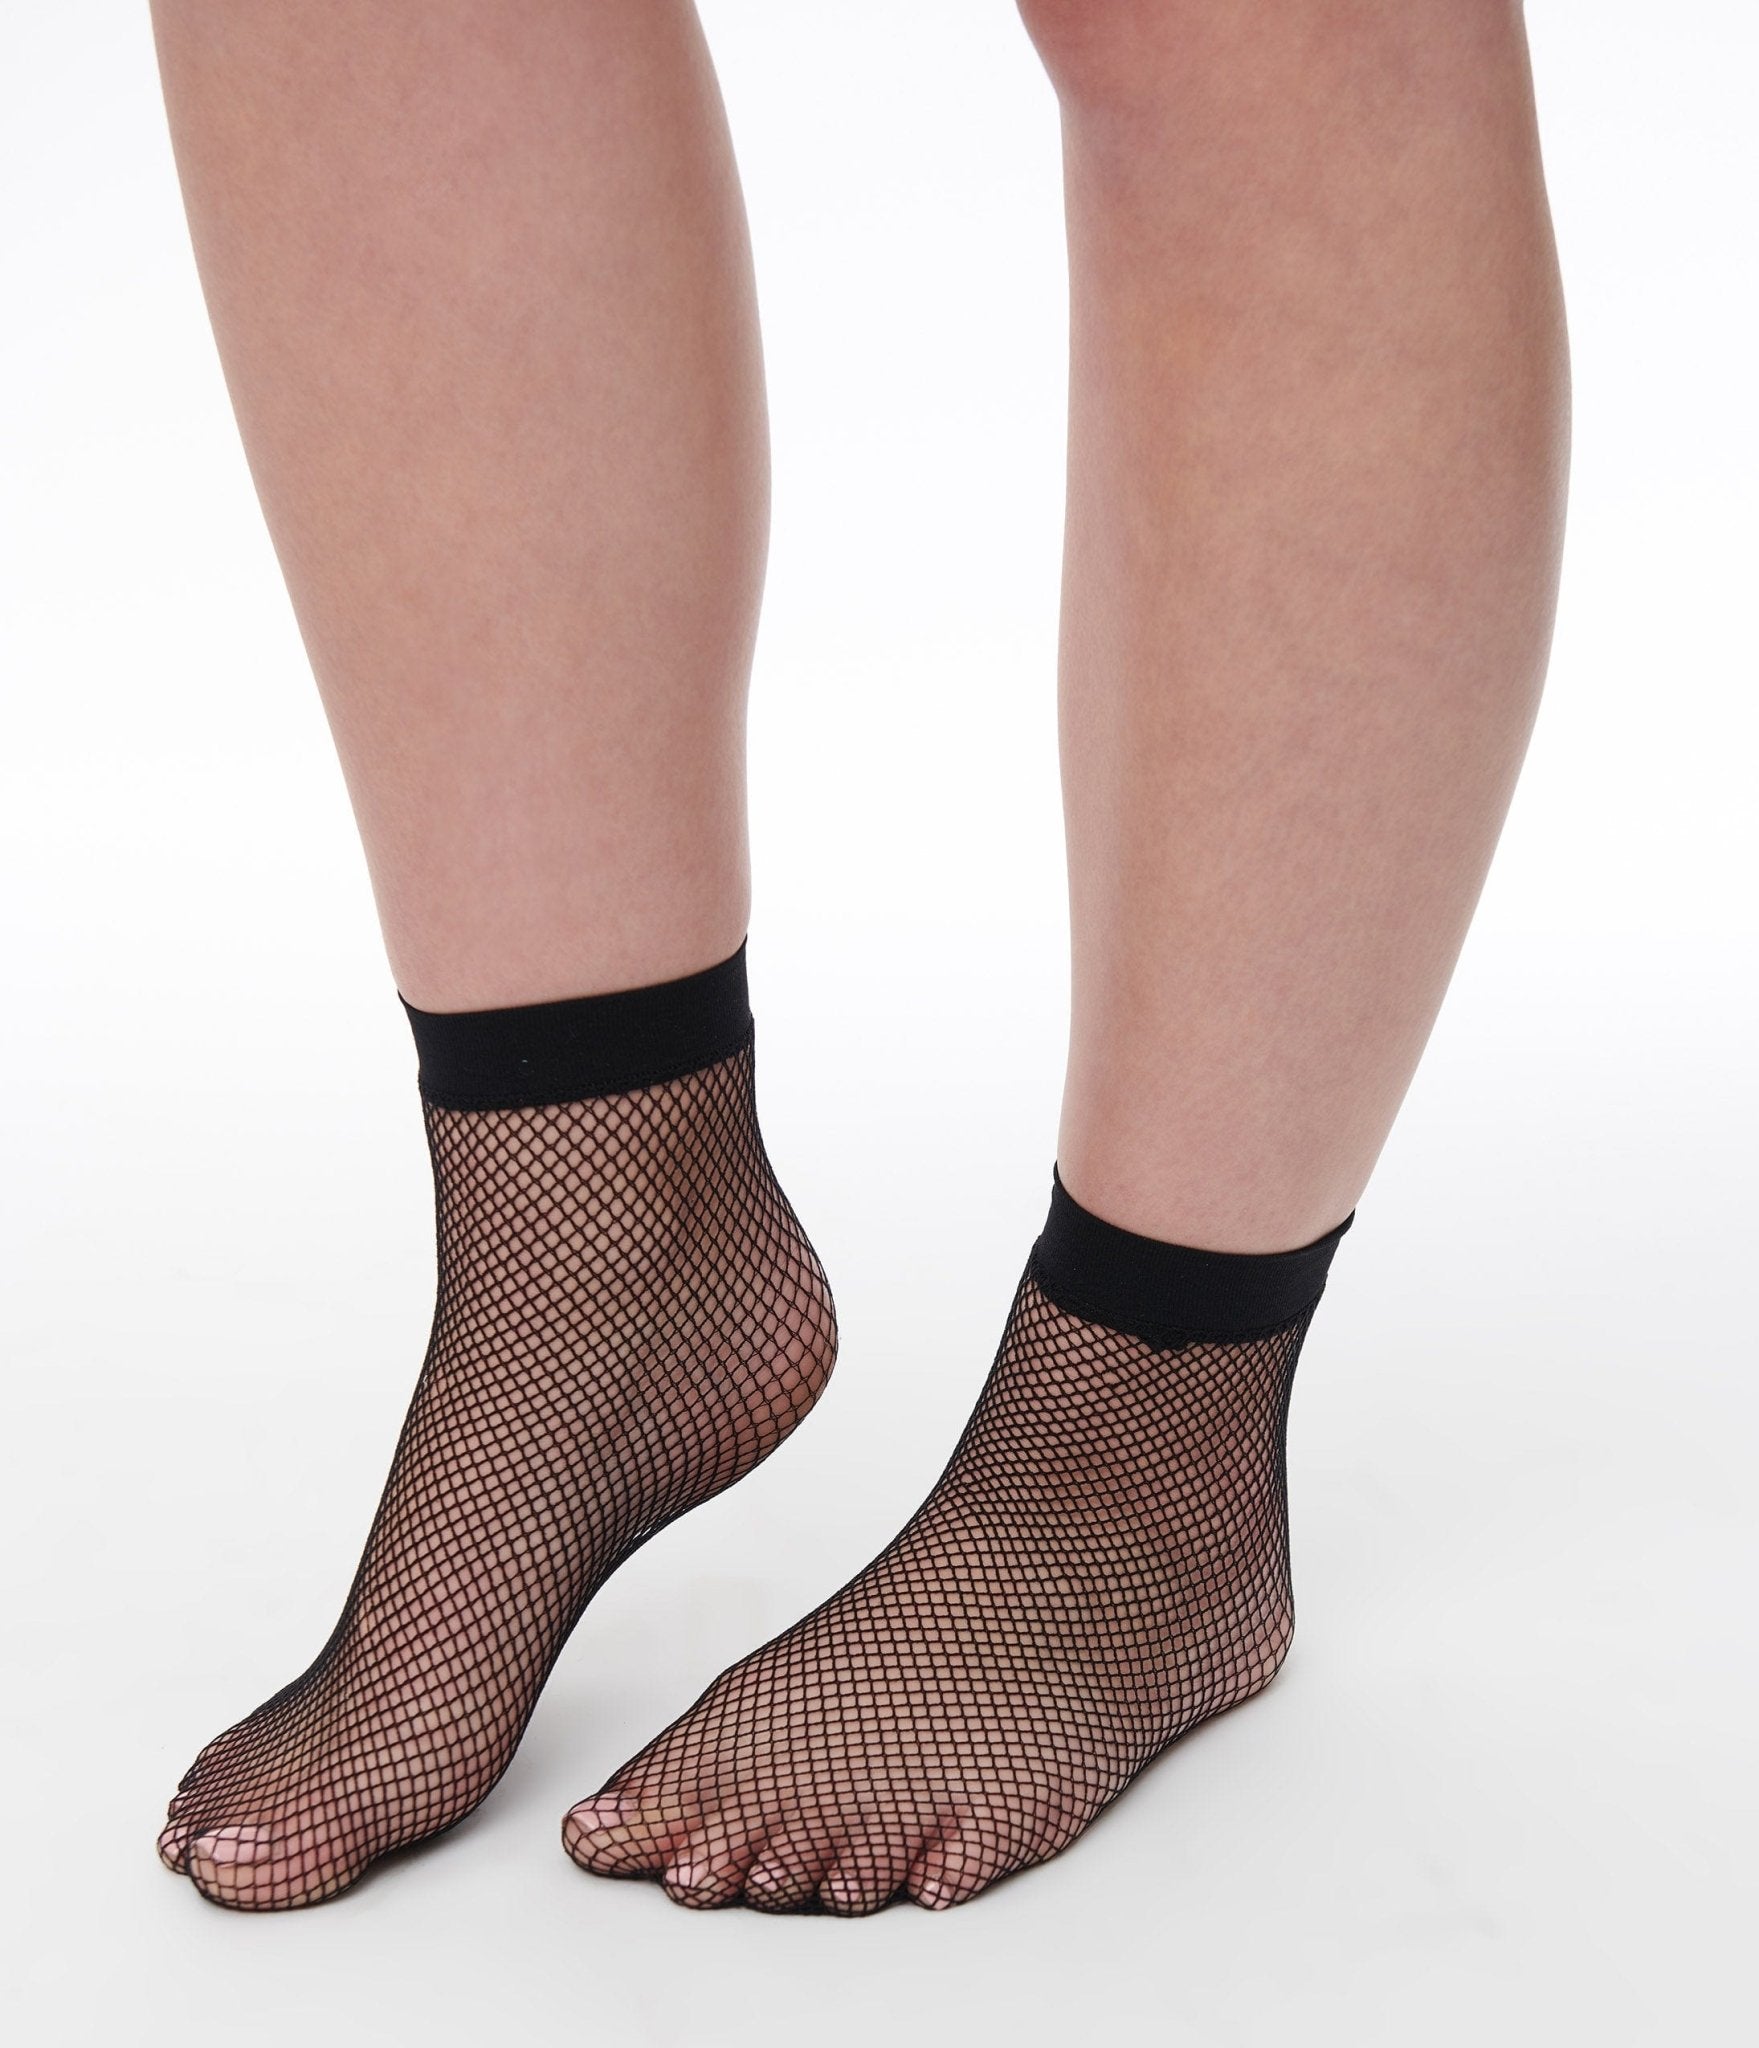 

Black Fishnet Socks